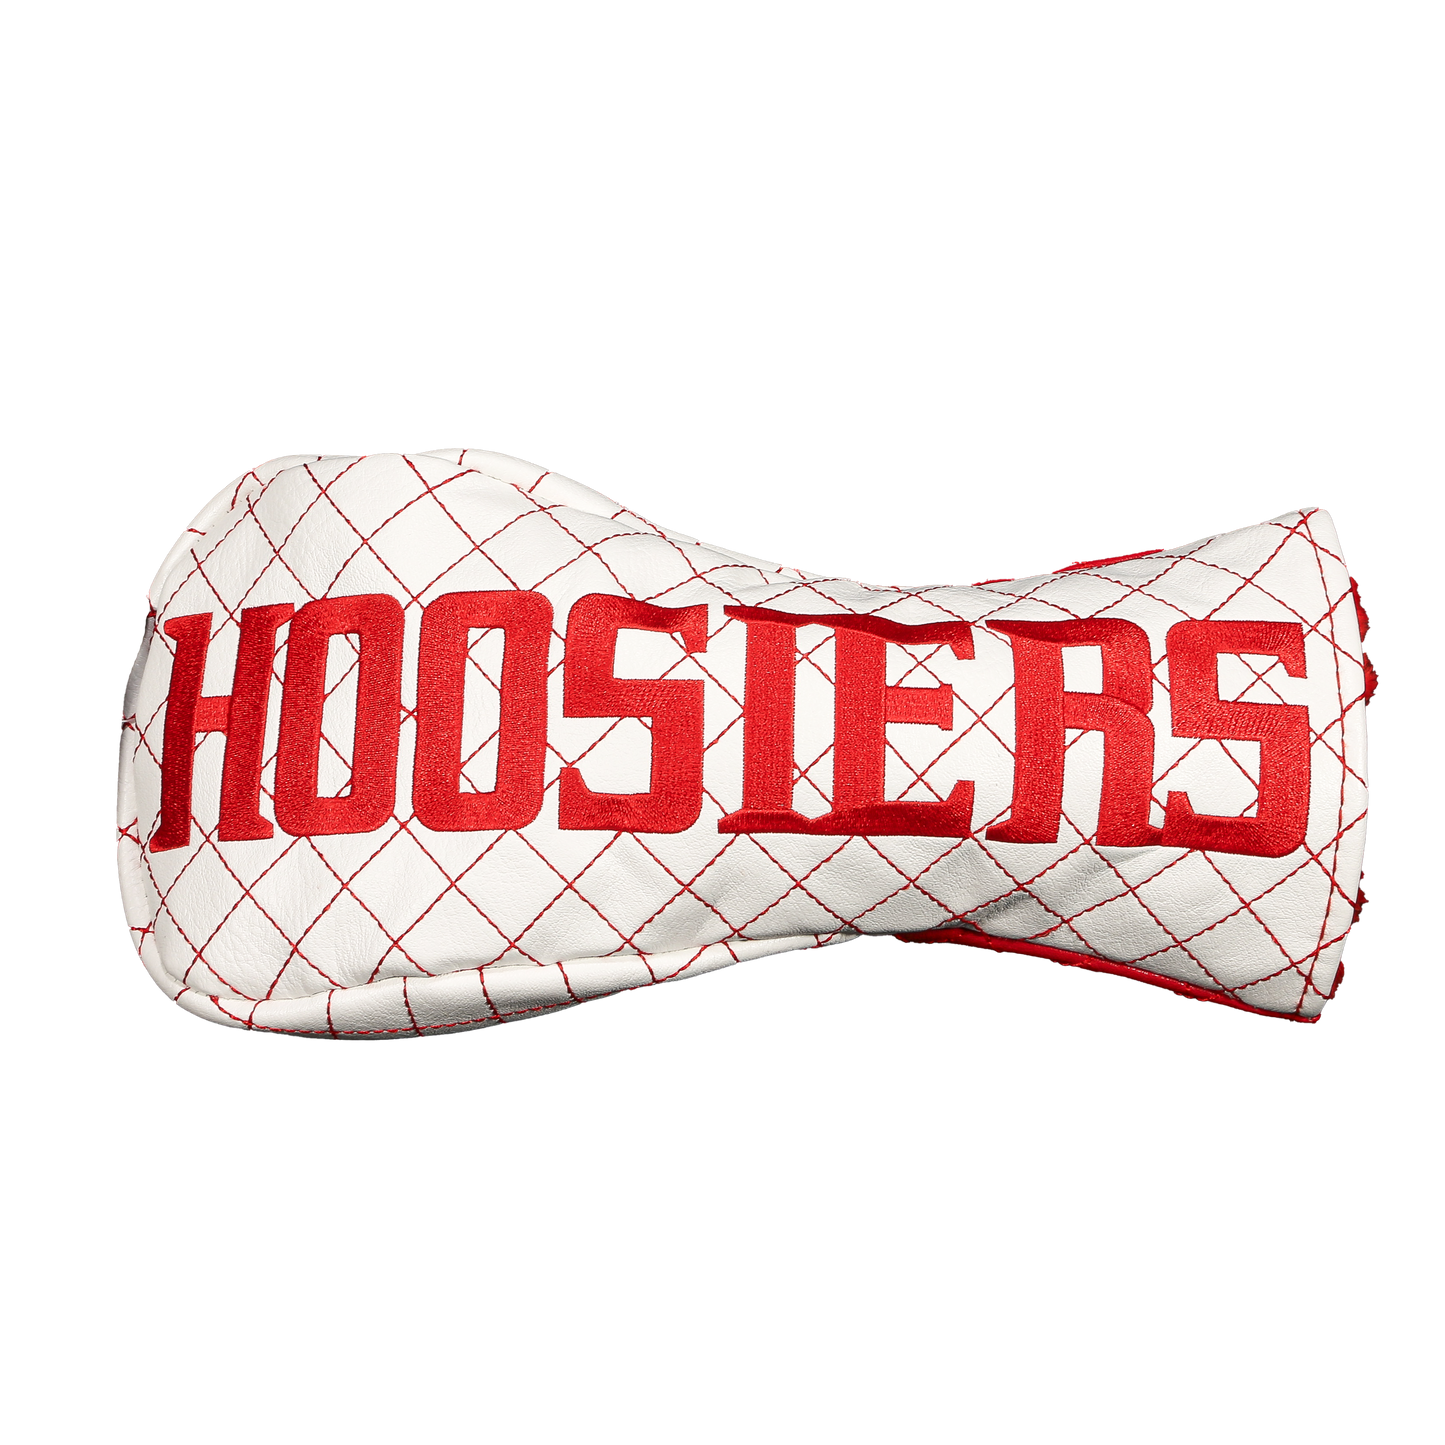 Indiana "Hoosiers" Fairway Head Cover